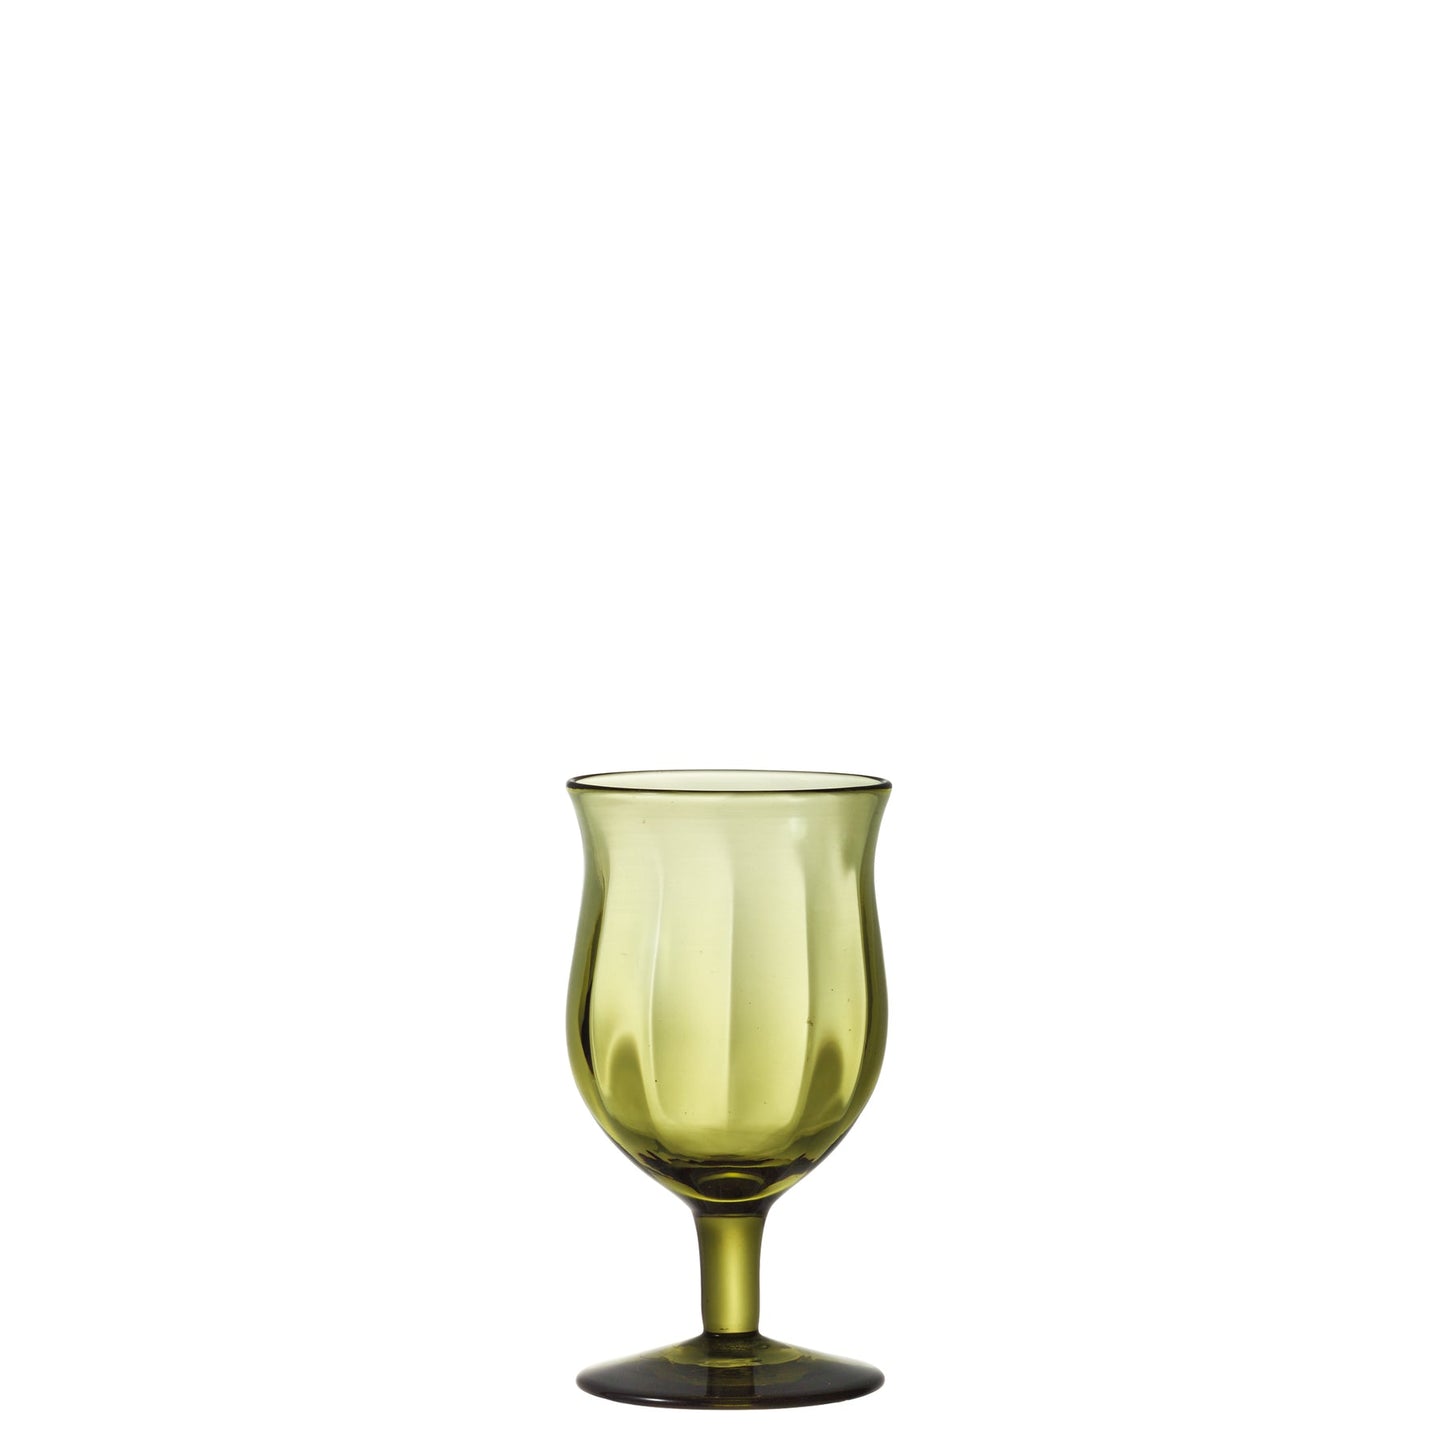 Tsugaru Vidro Heritage Collection Wine Glasses